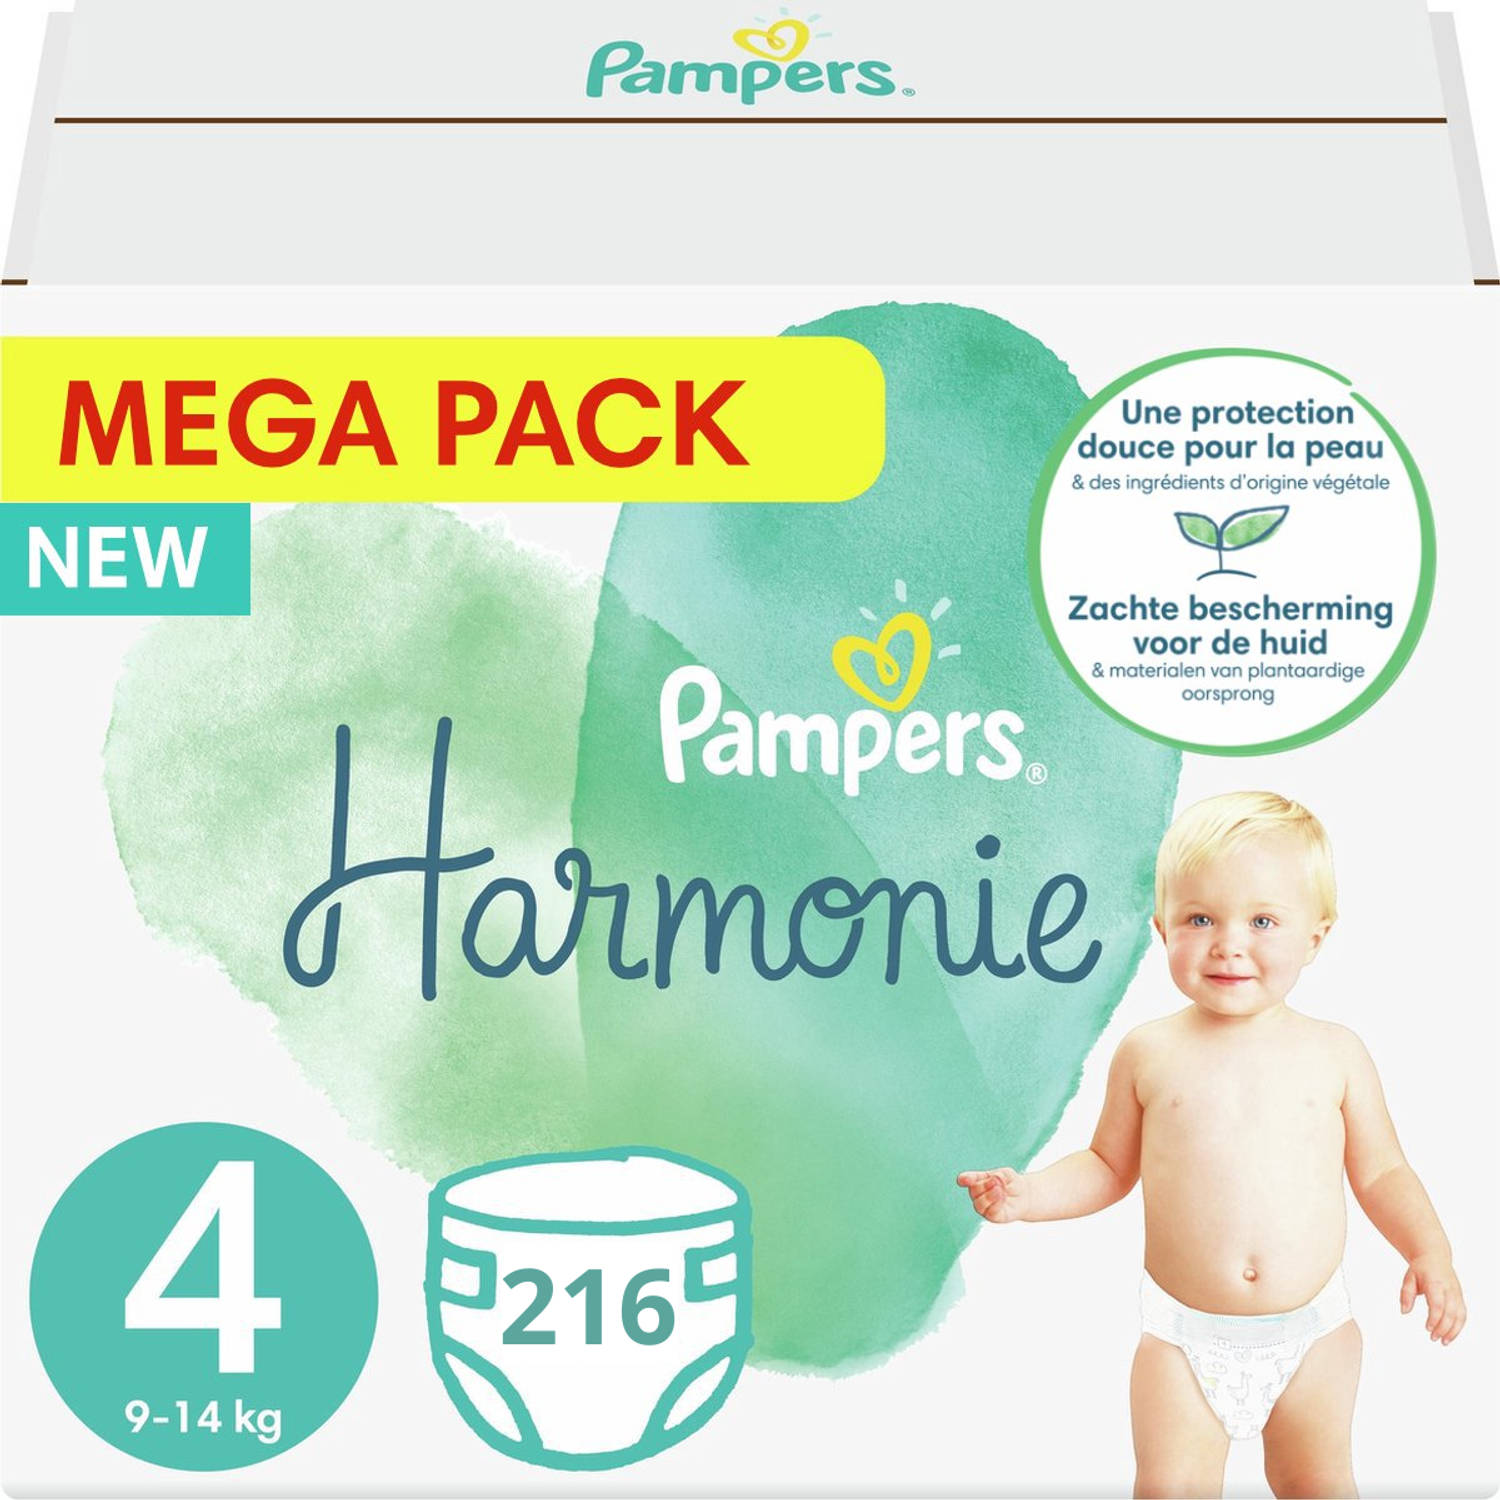 Pampers Harmonie / Pure maat 4 (9-14KG) - 216 stuks - Met 0% parfum - Voordeelverpakking